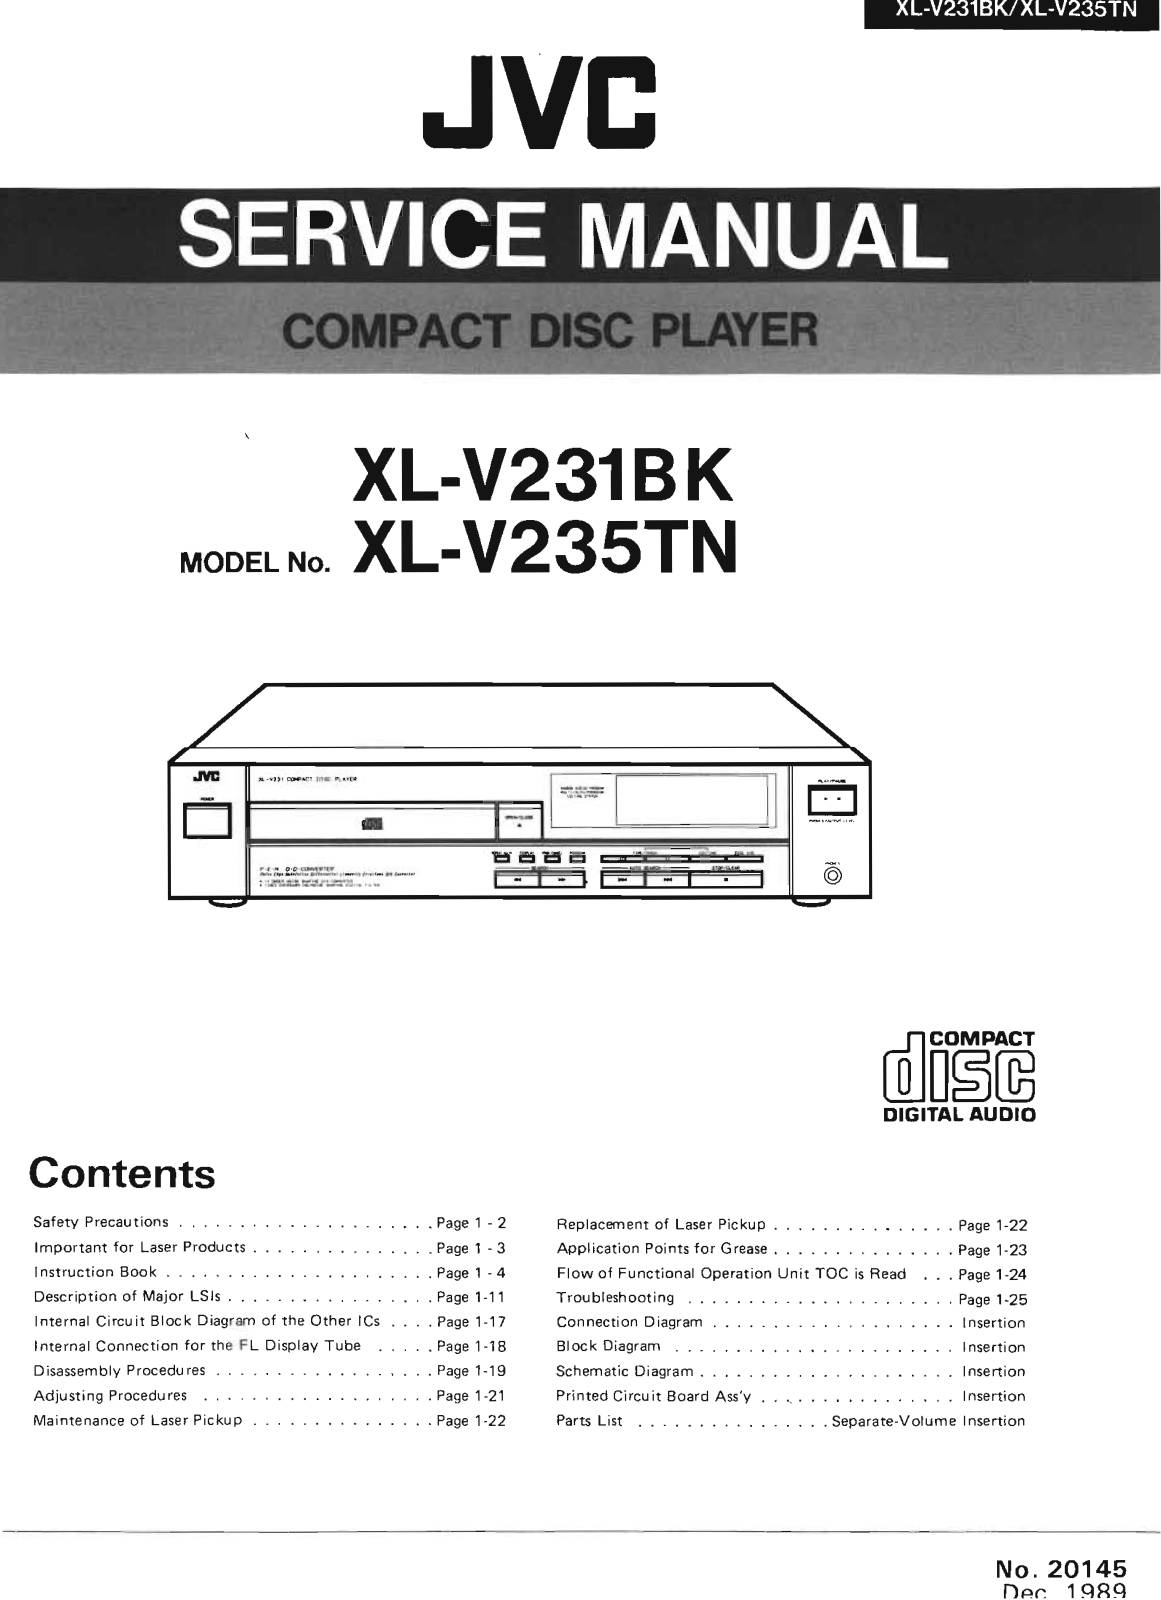 JVC XL-V235